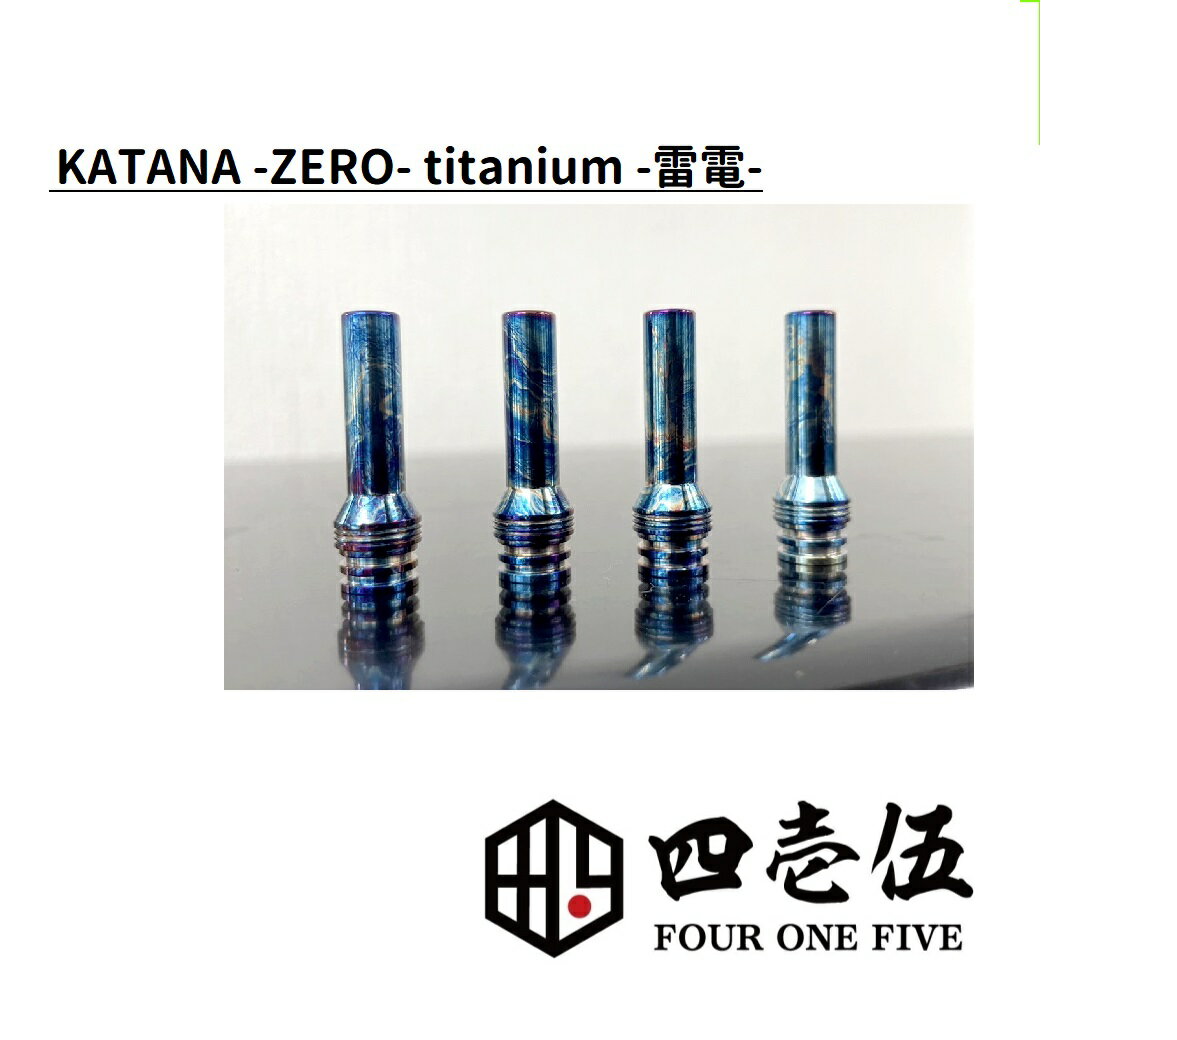 スーパーゲリラ【雷電】KATANA -ZERO- RAIDEN TITANIUM チタン ドリップチップ カタナ 510規格 FOUR ONE FIVE 415 フォーワンファイブ ベイプ 510ドリップチップ マウスピース vape 電子タバコ…